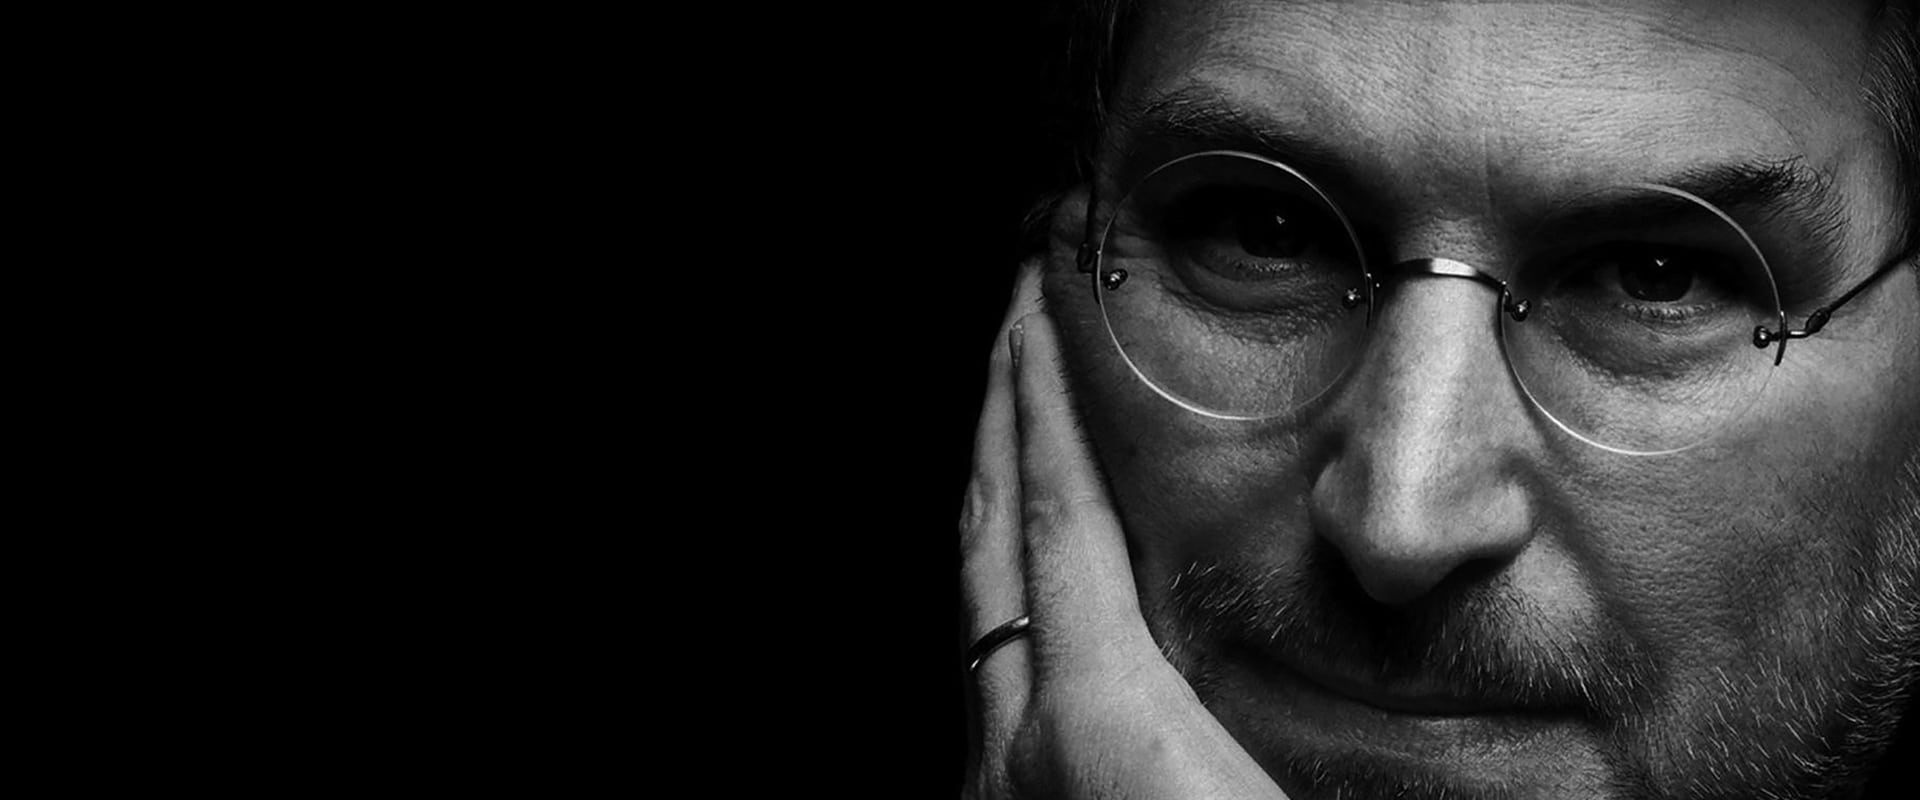 Steve Jobs - O Homem e as Máquinas